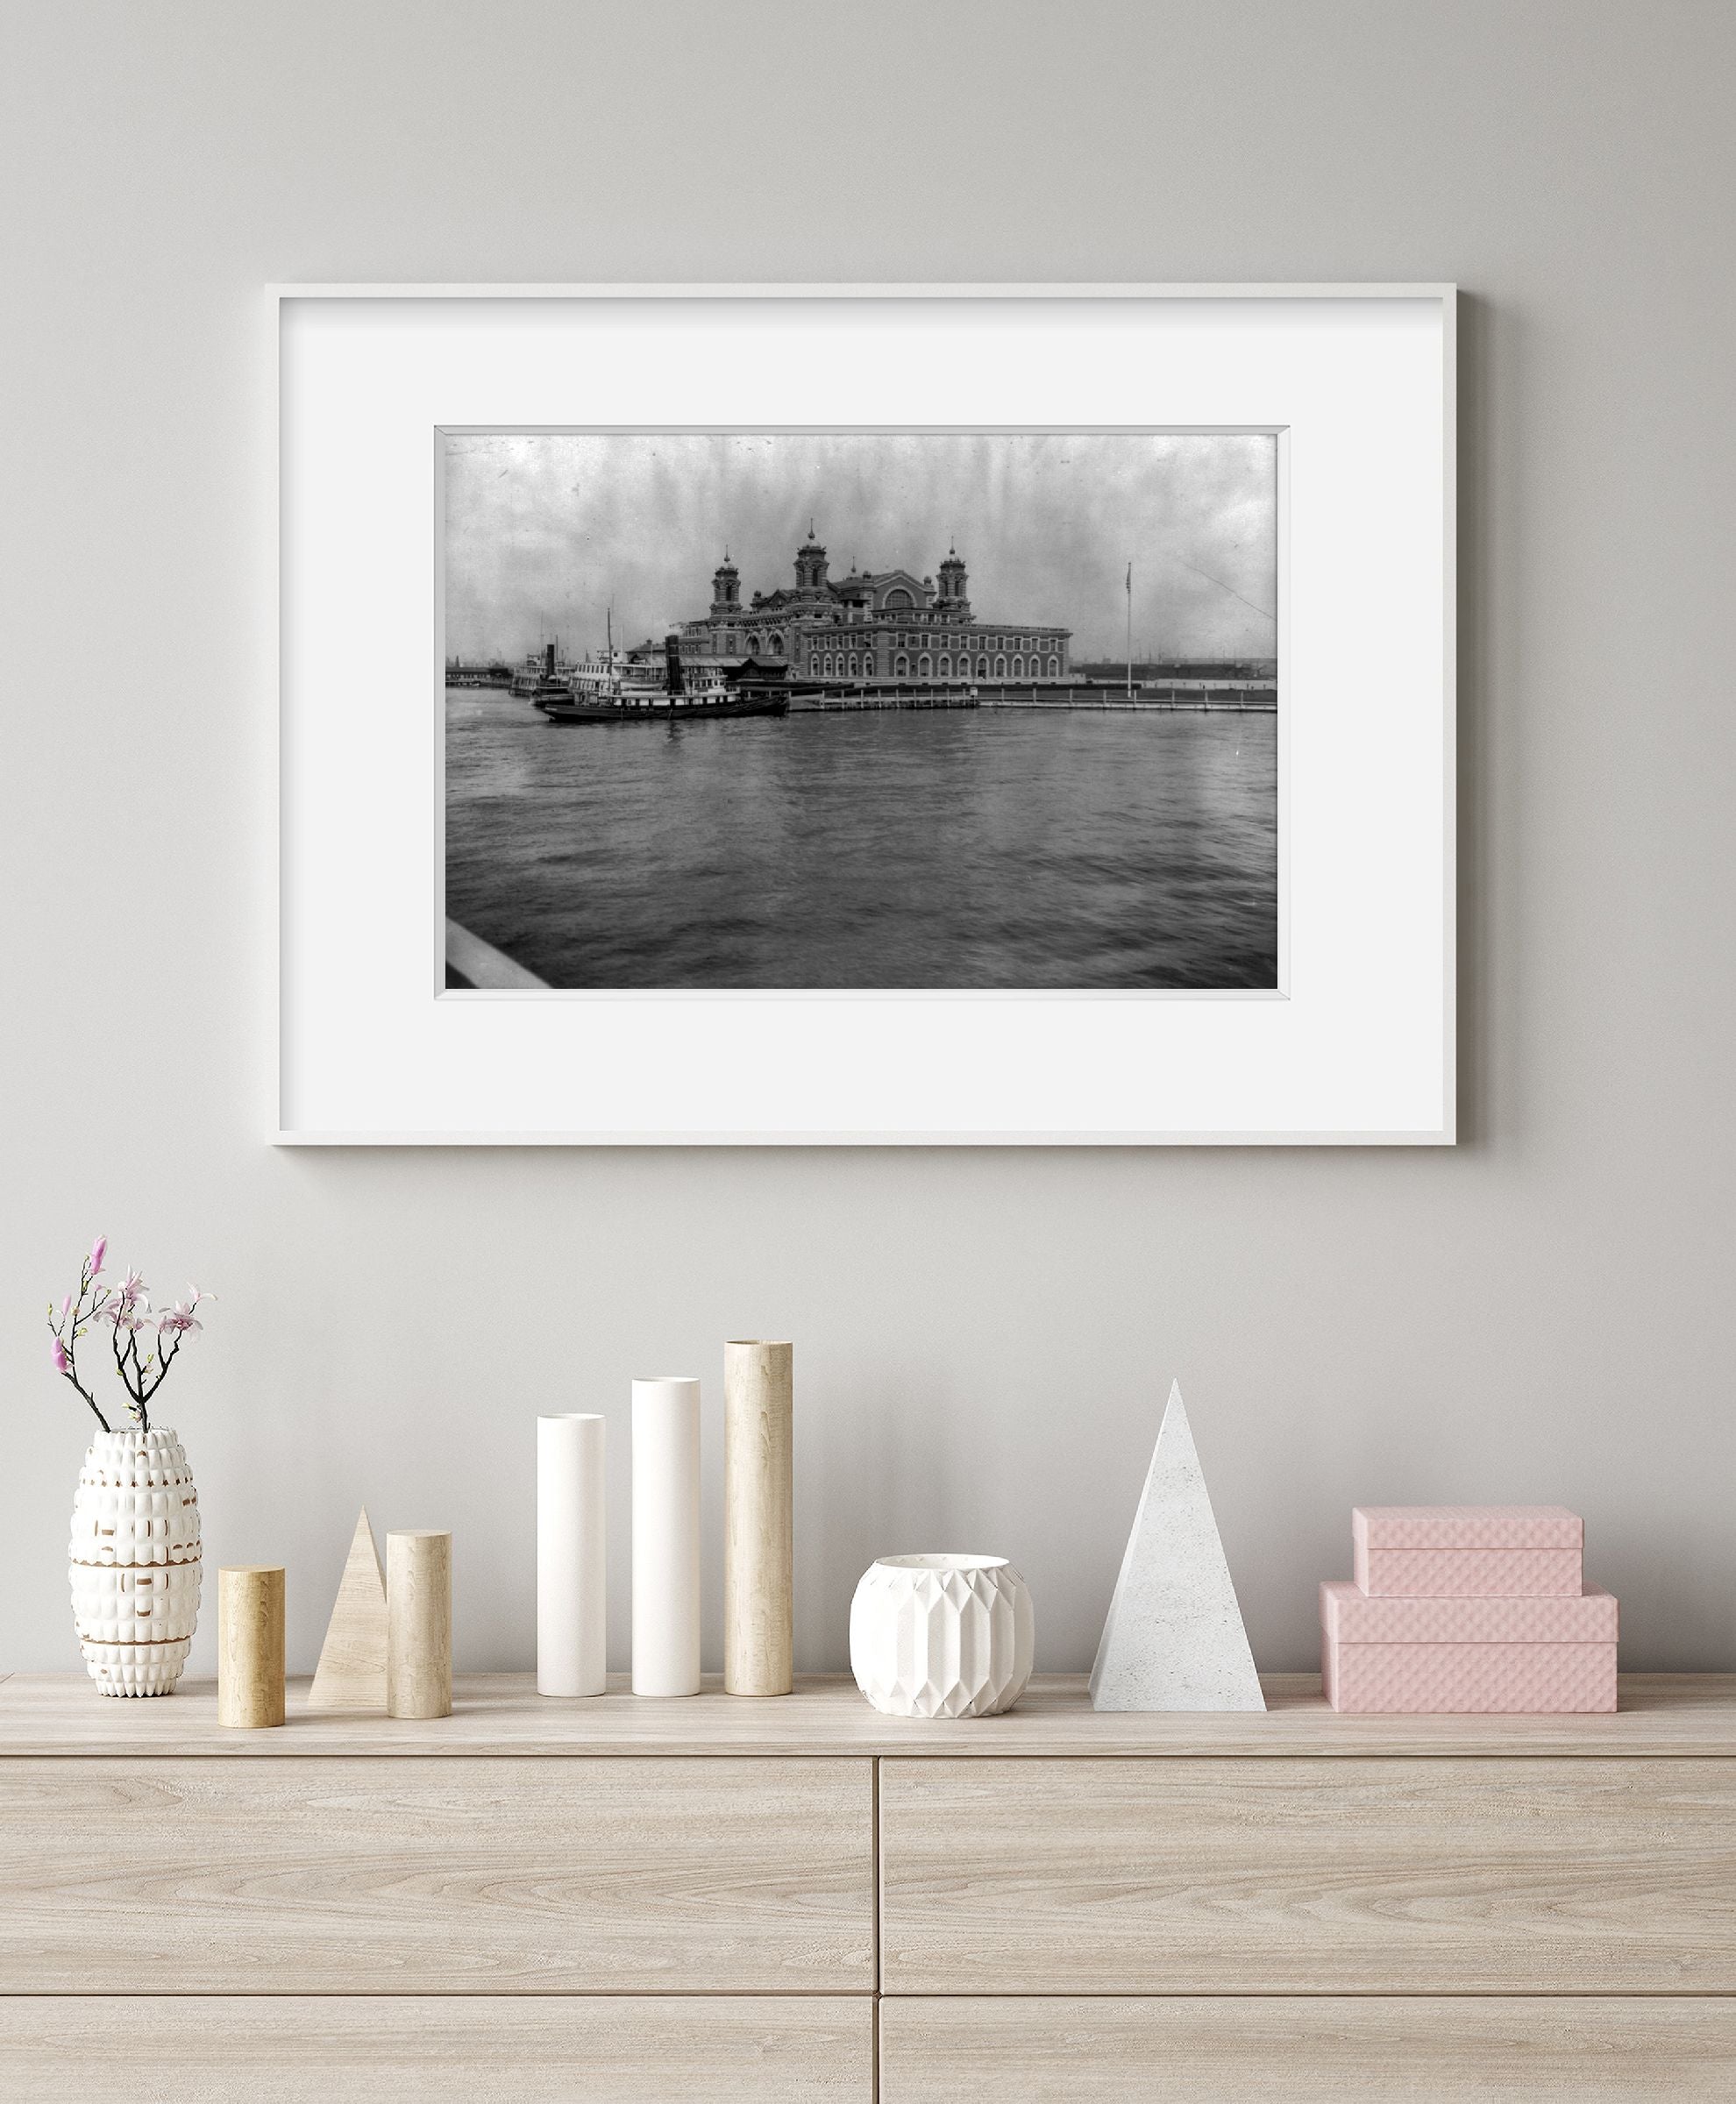 Vintage c1913. photograph: View of Ellis Island, N.Y., looking across water towa